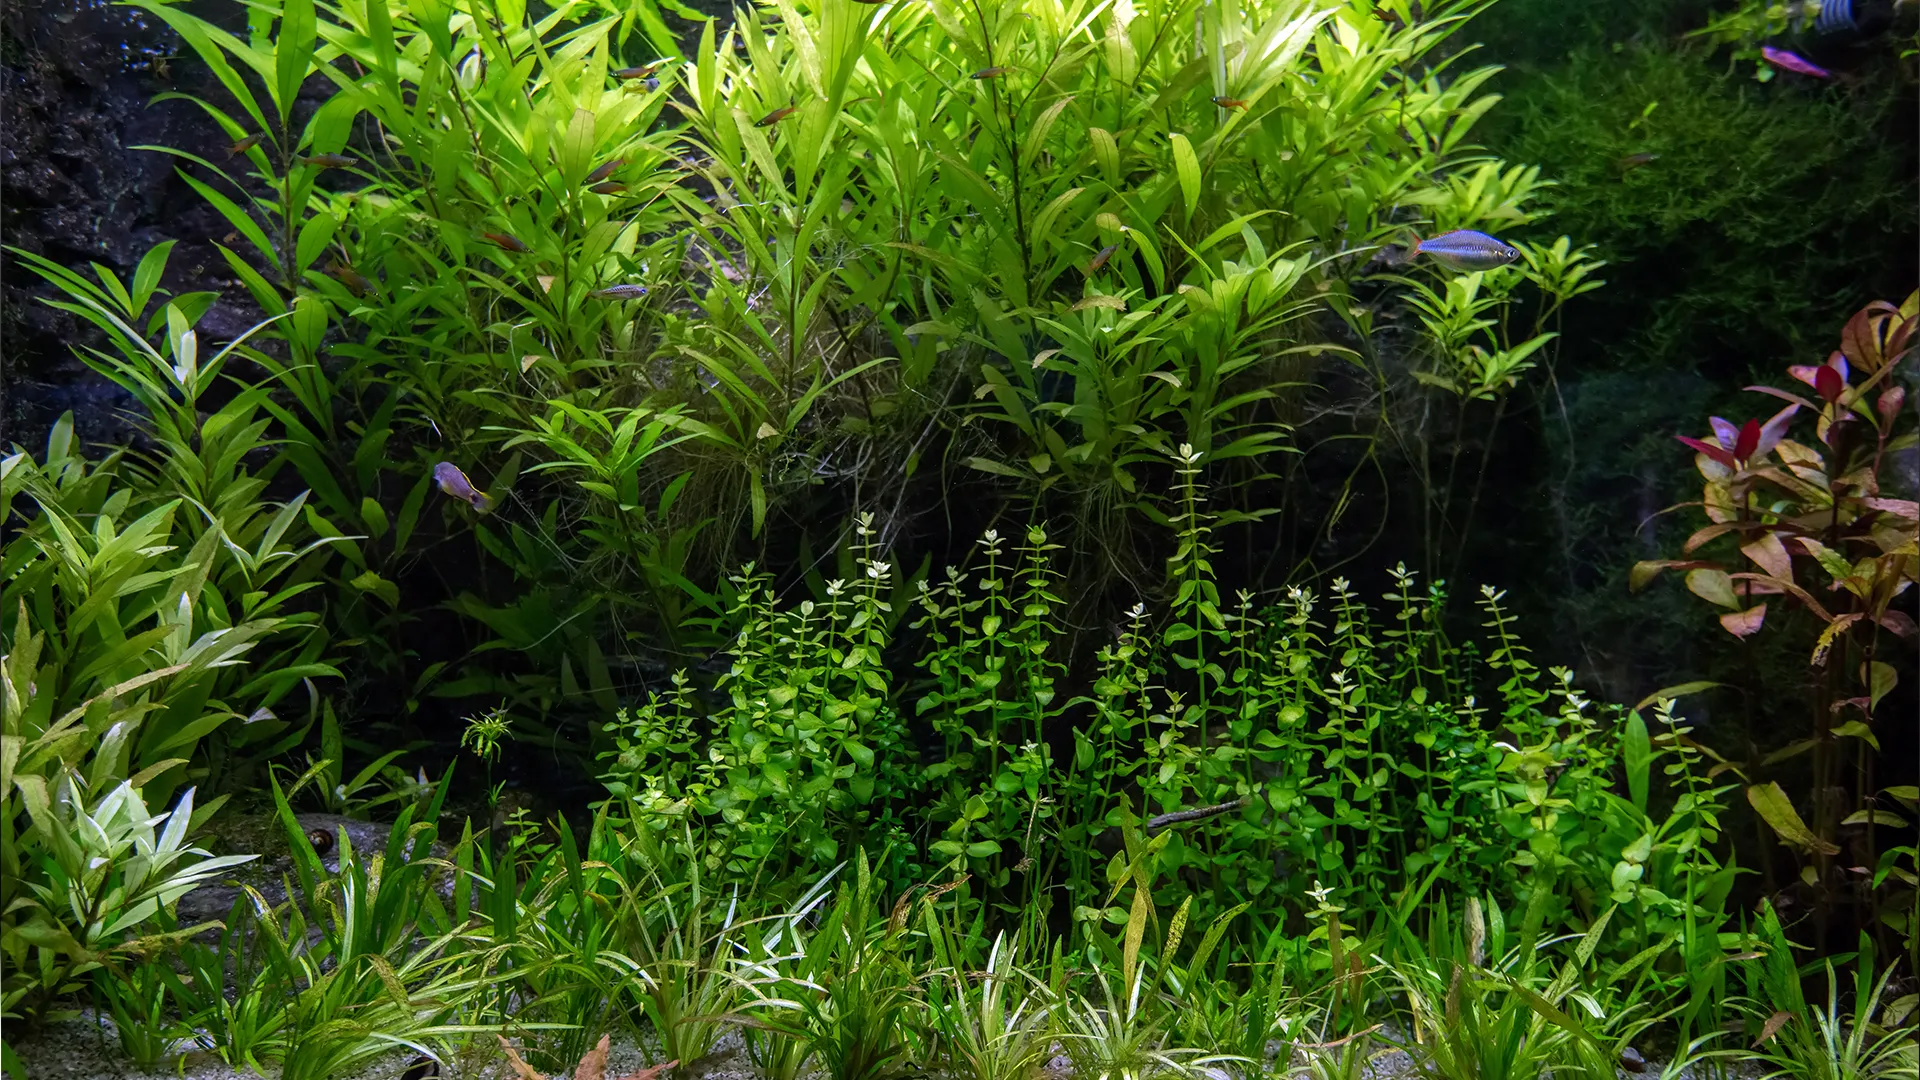 אקווריום צמחיה היי טק - צמחים מתוך האקווריום, דגים וחצץ